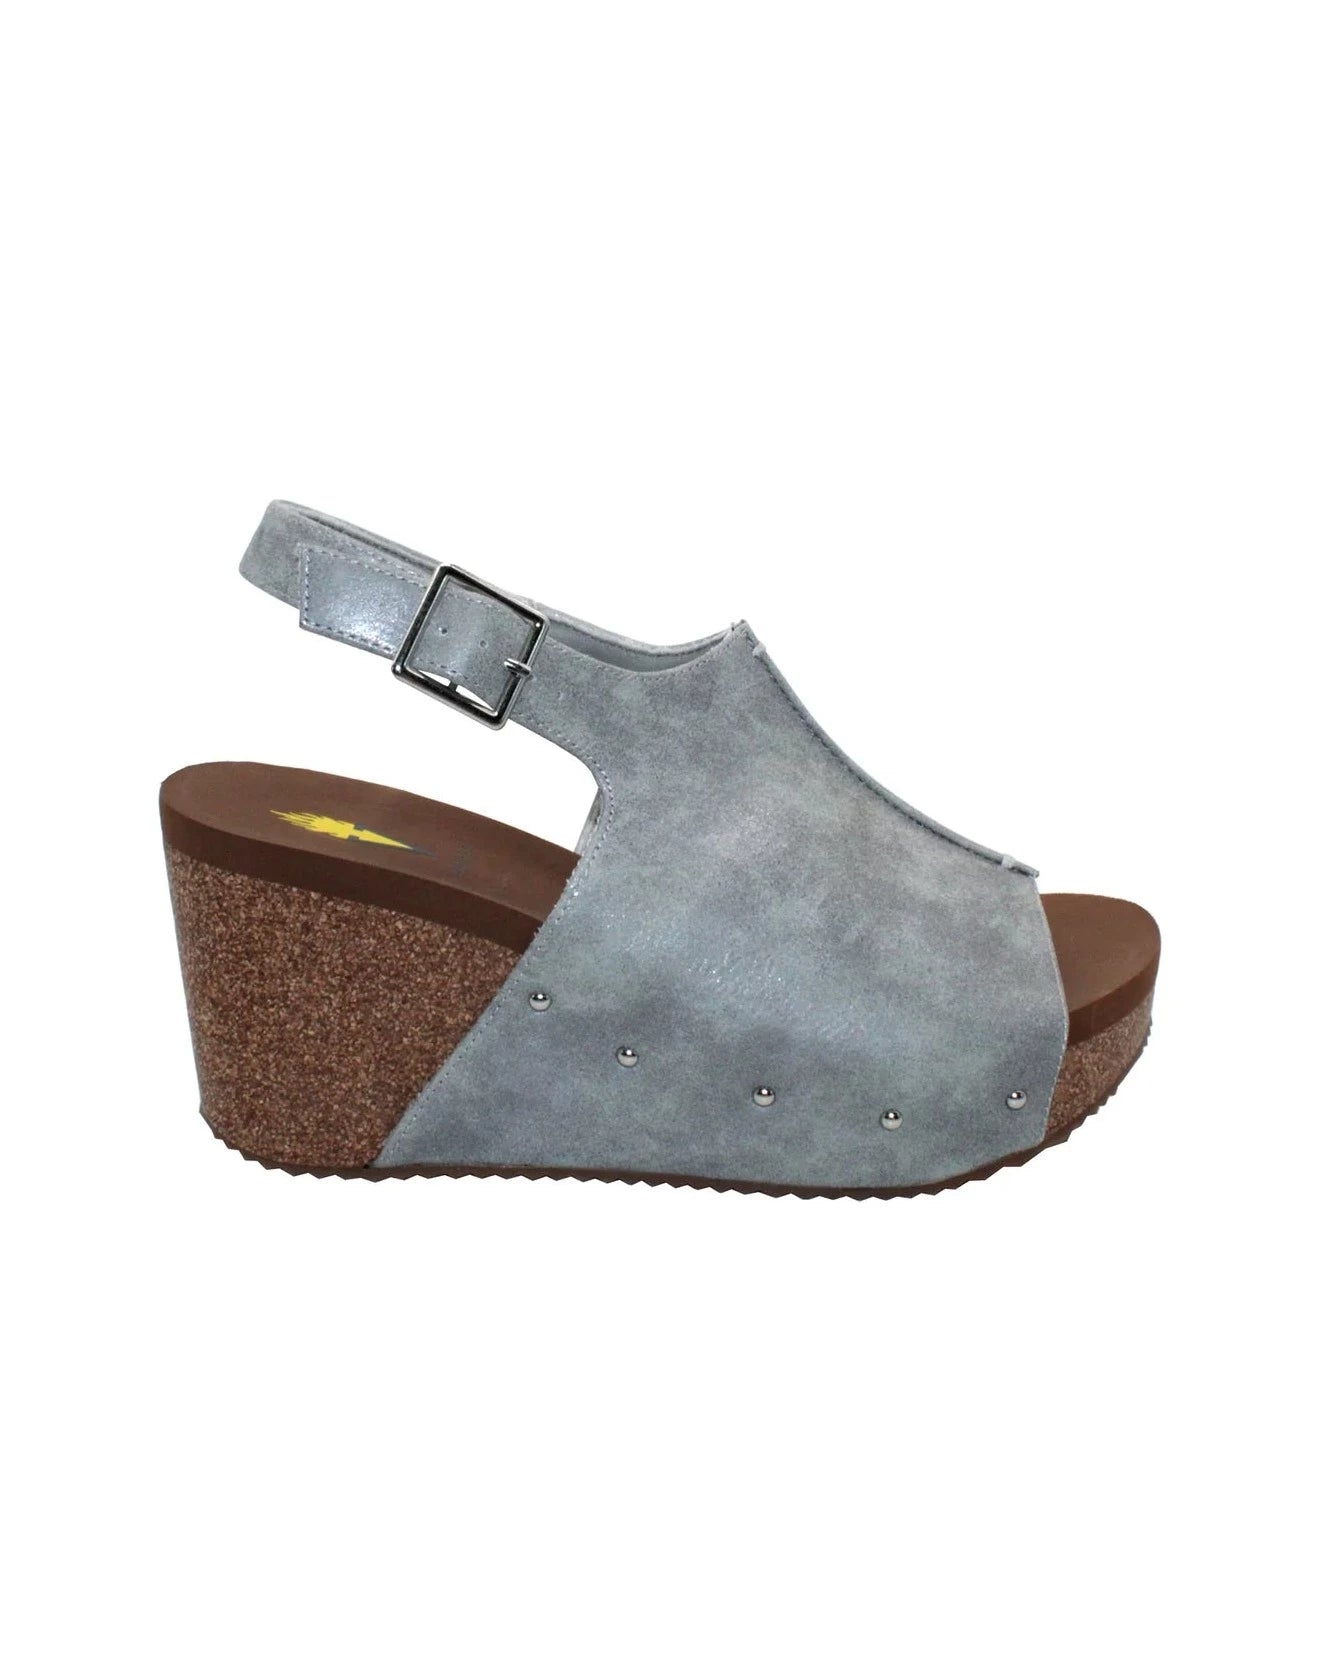 Volatile Division Wedge Sandals - Grey